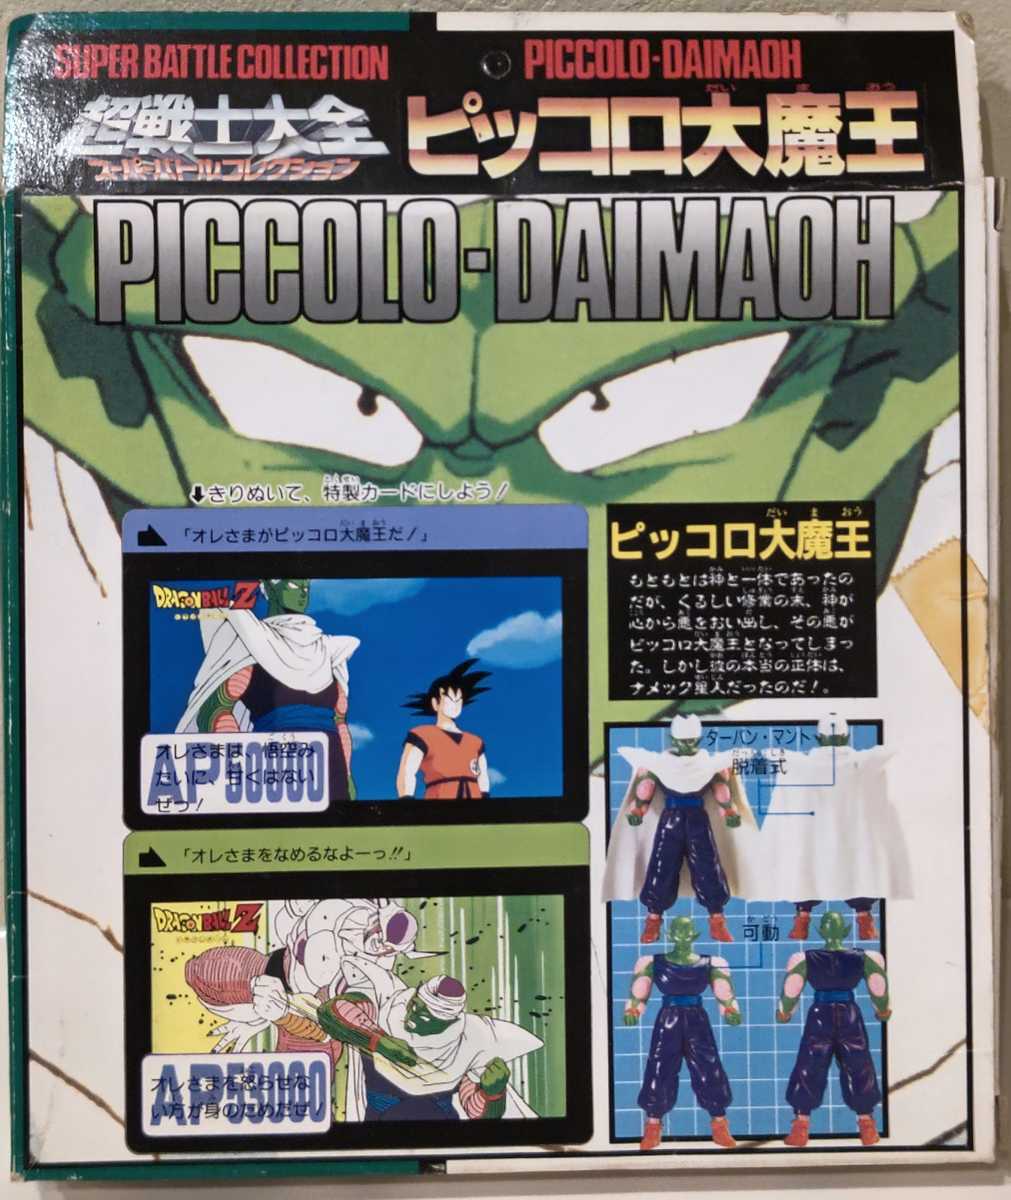 ドラゴンボール Z 超戦士大全 スーパーバトルコレクション Vol.3 